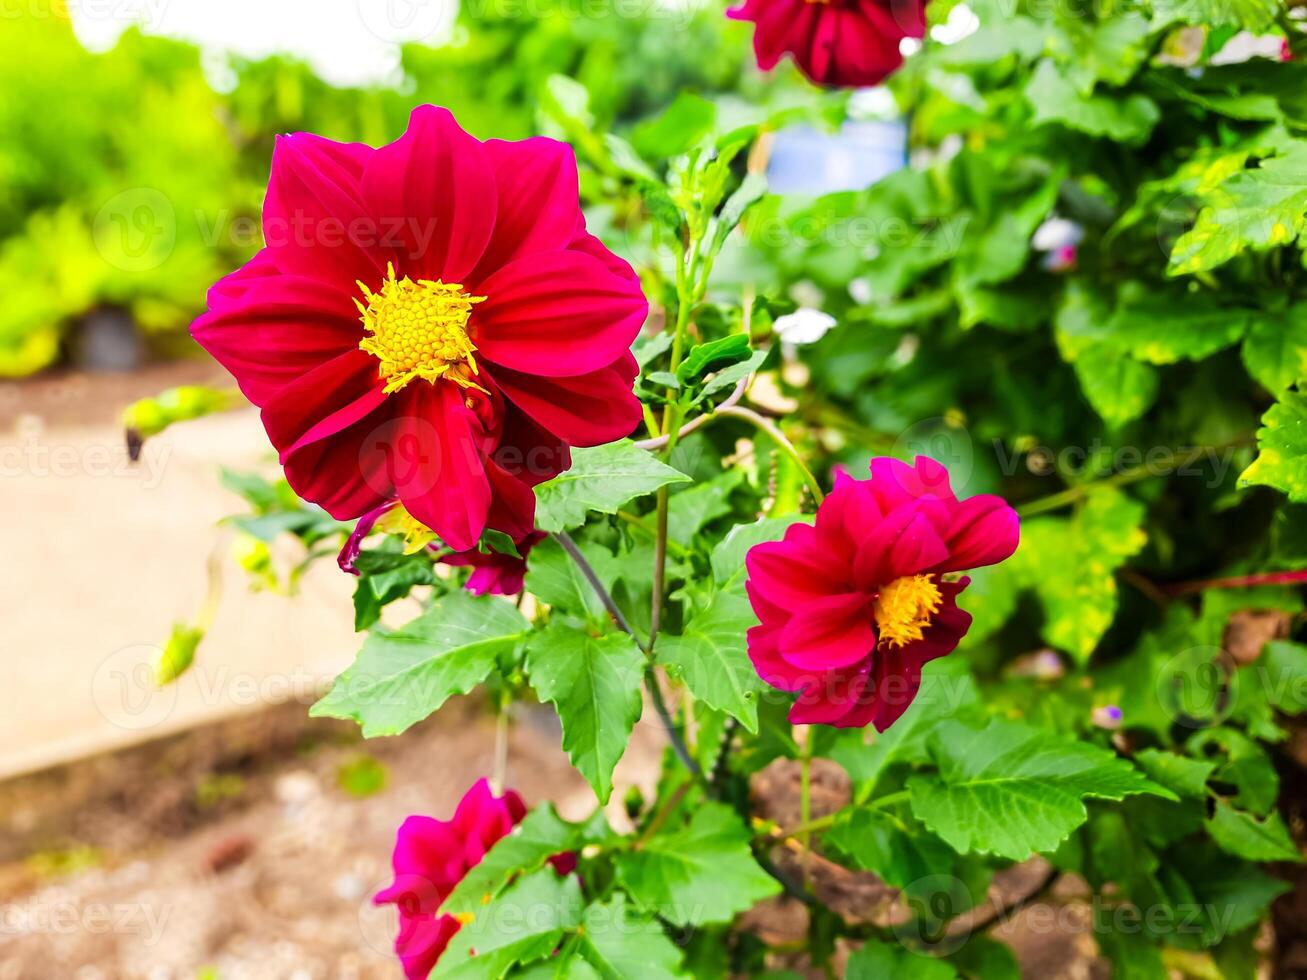 el belleza de el rojo dalia flor cuales floraciones y es usado como un jardín decoración planta foto